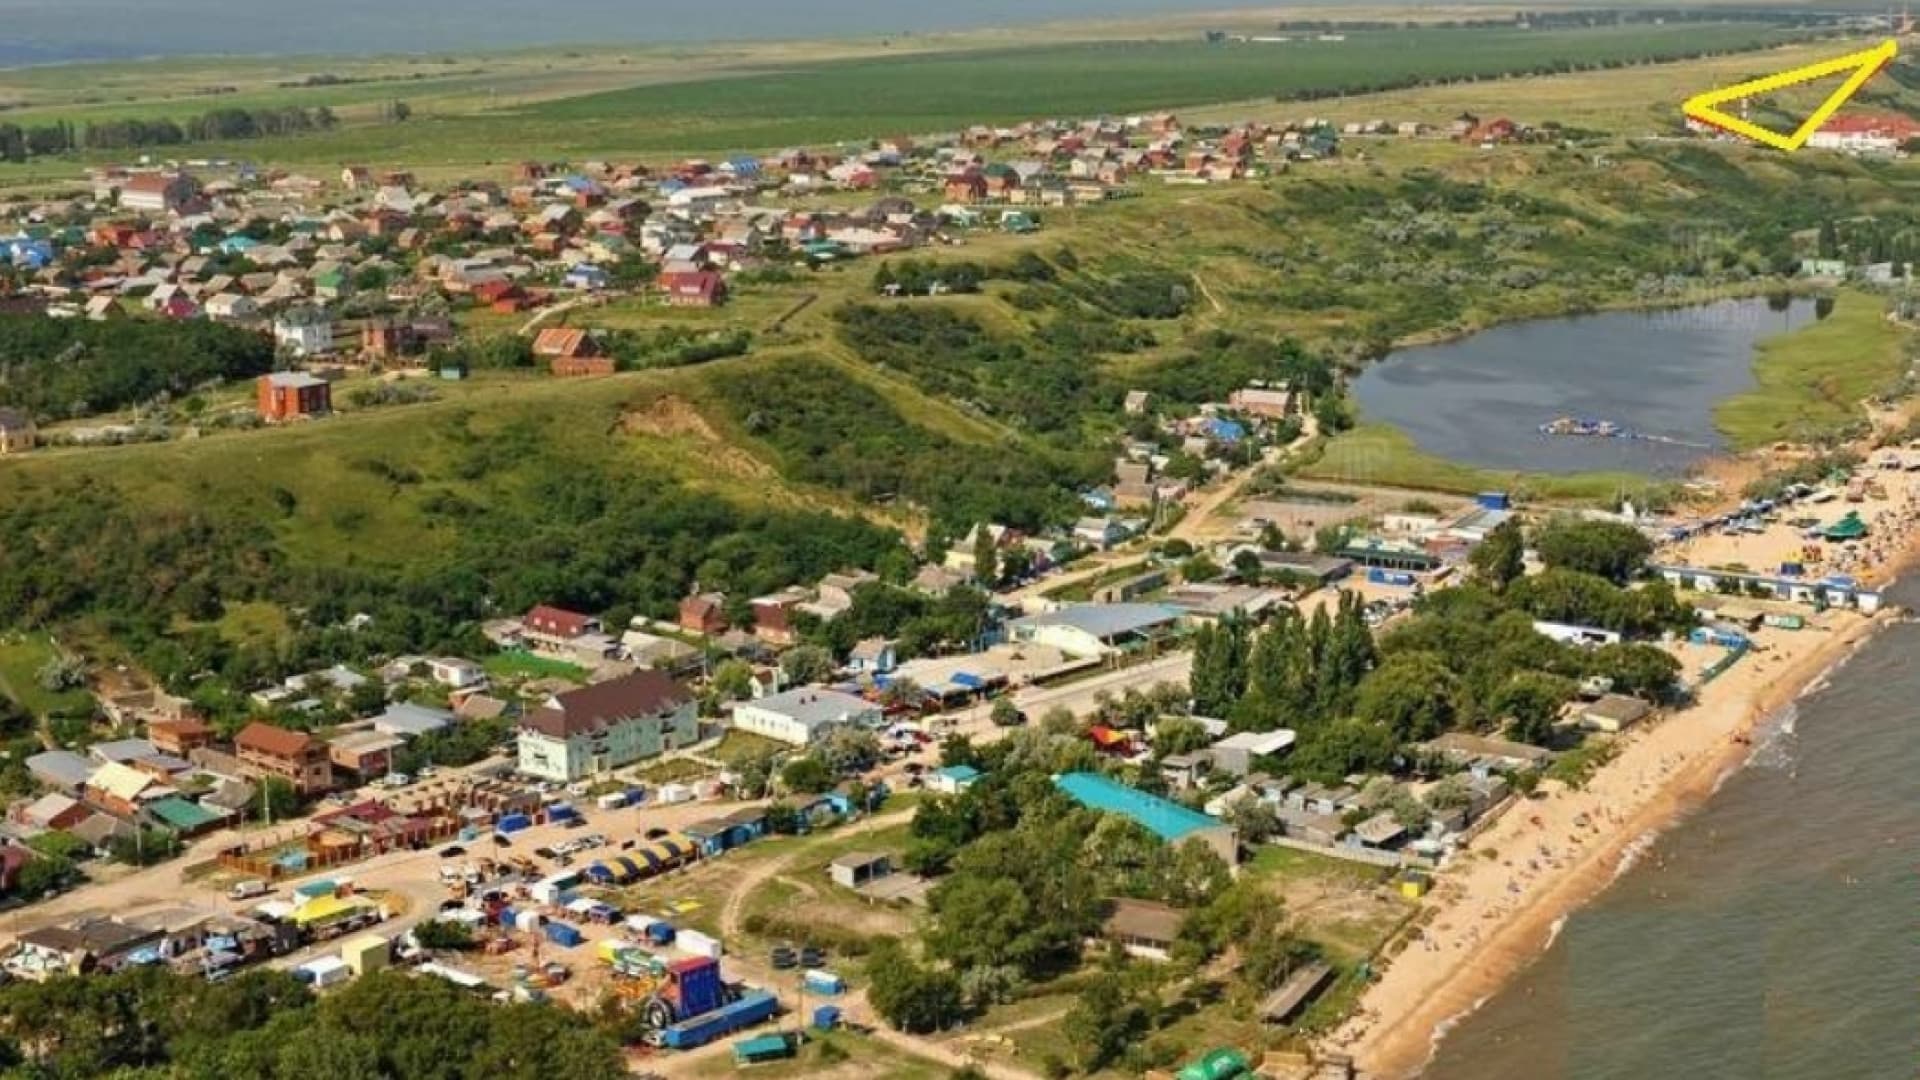 село голубицкое азовское море